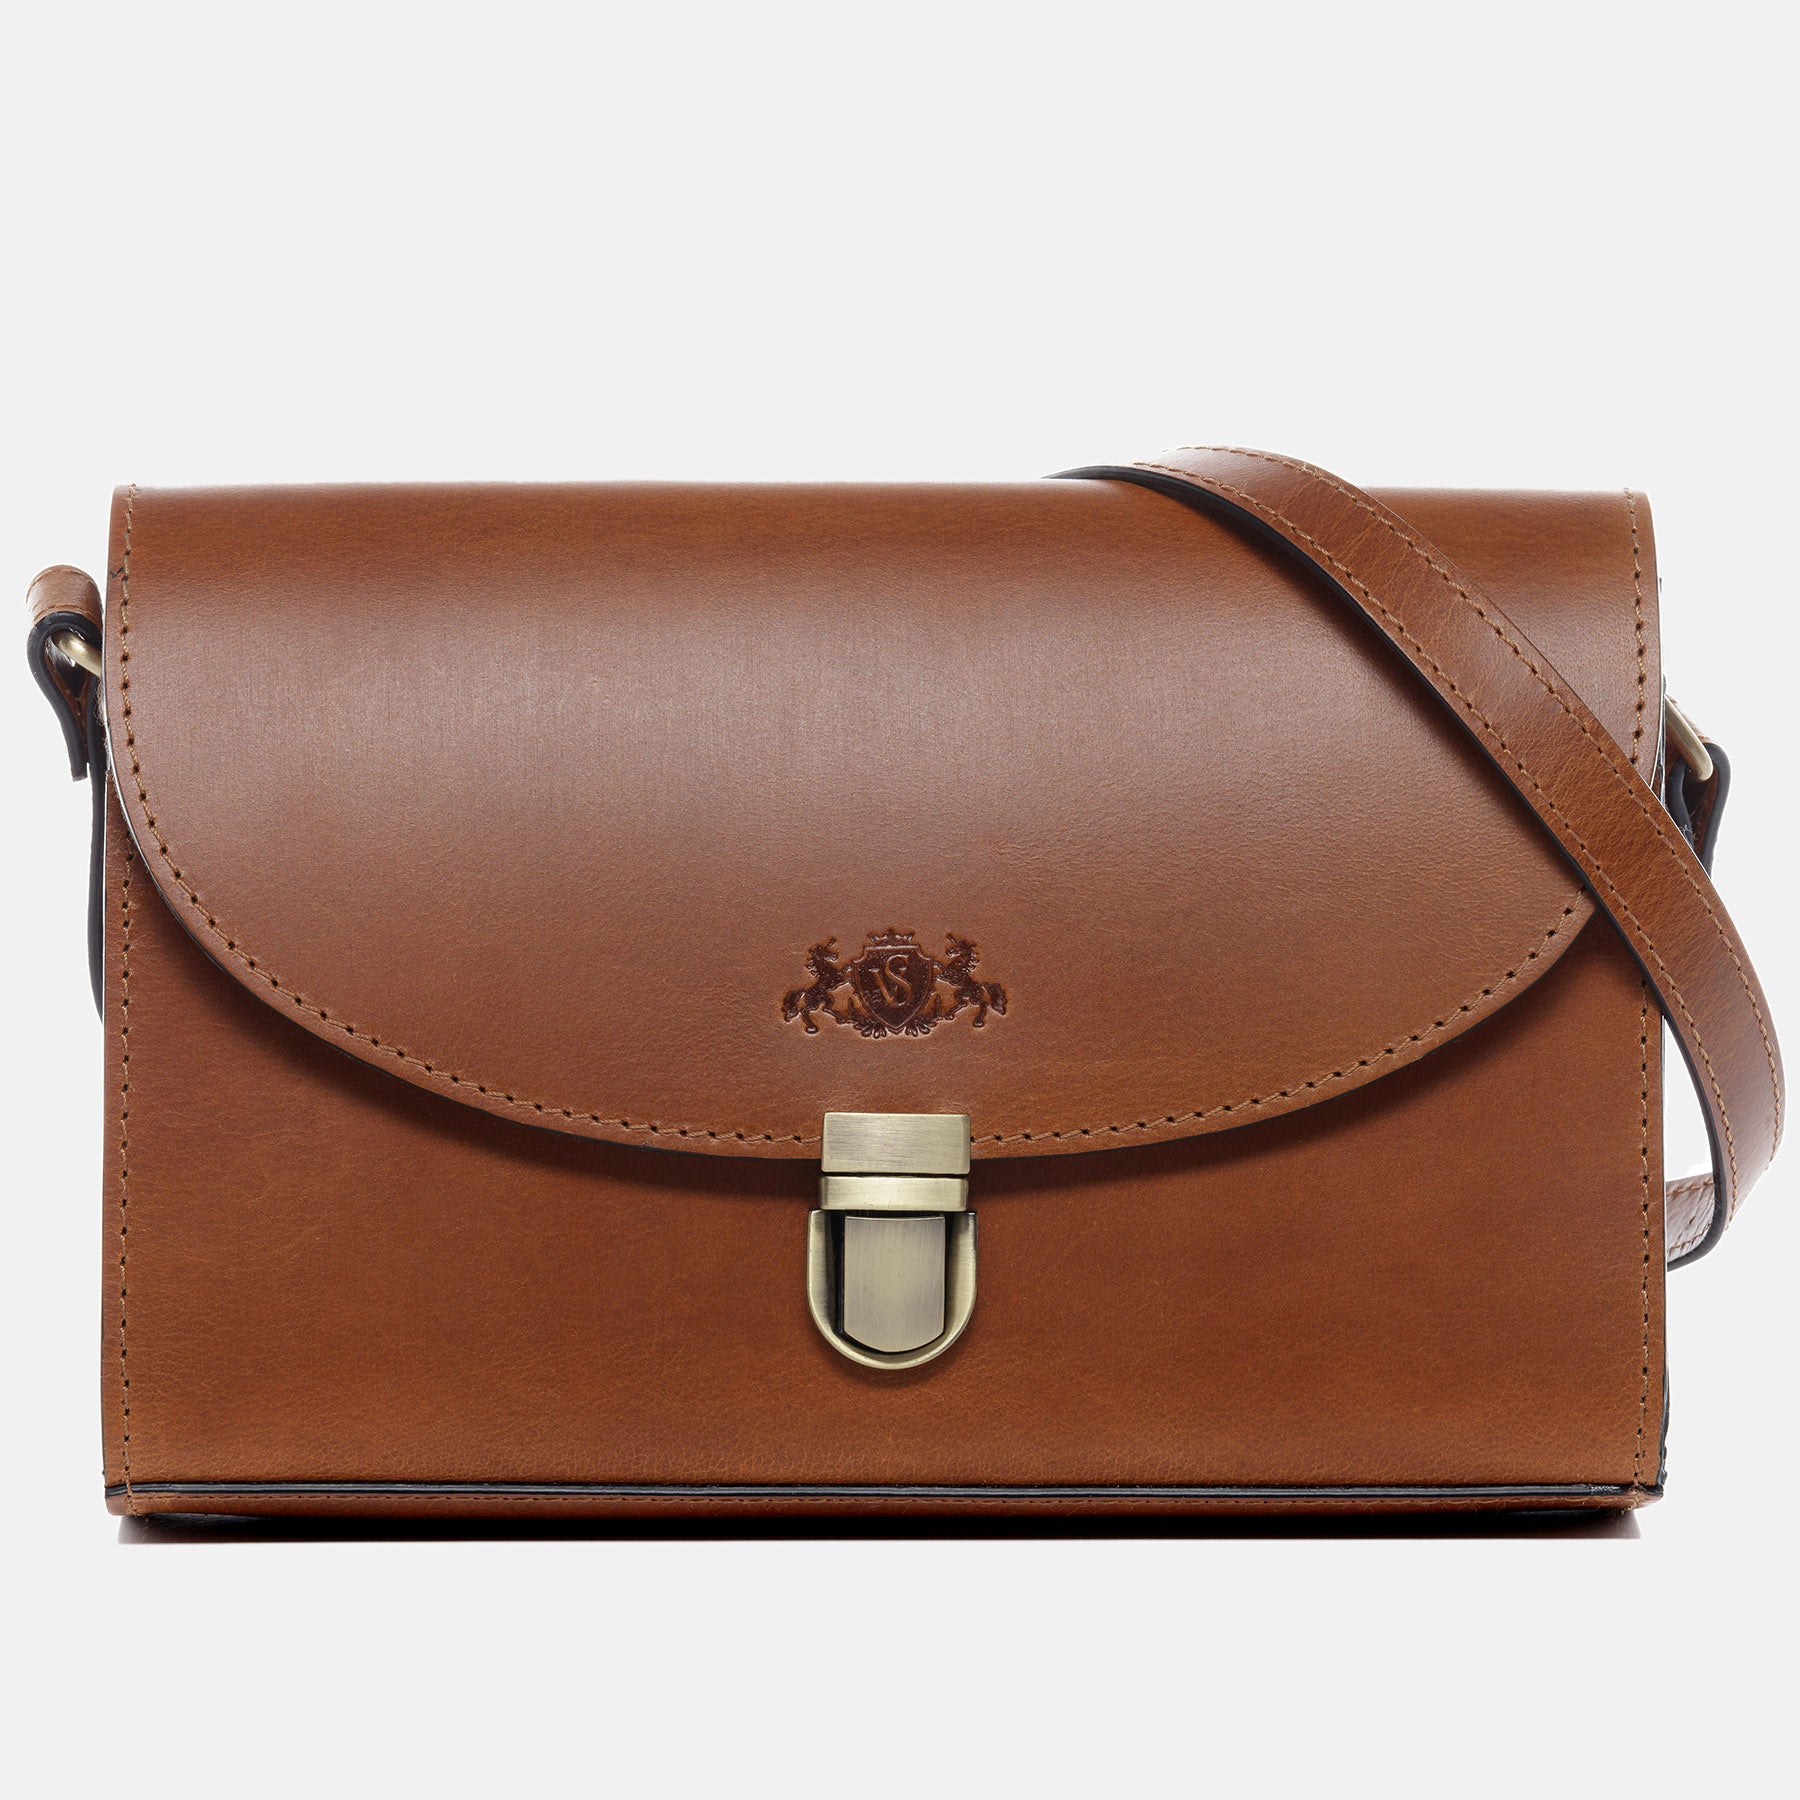 Shoulder bag ADELE saddle leather light brown